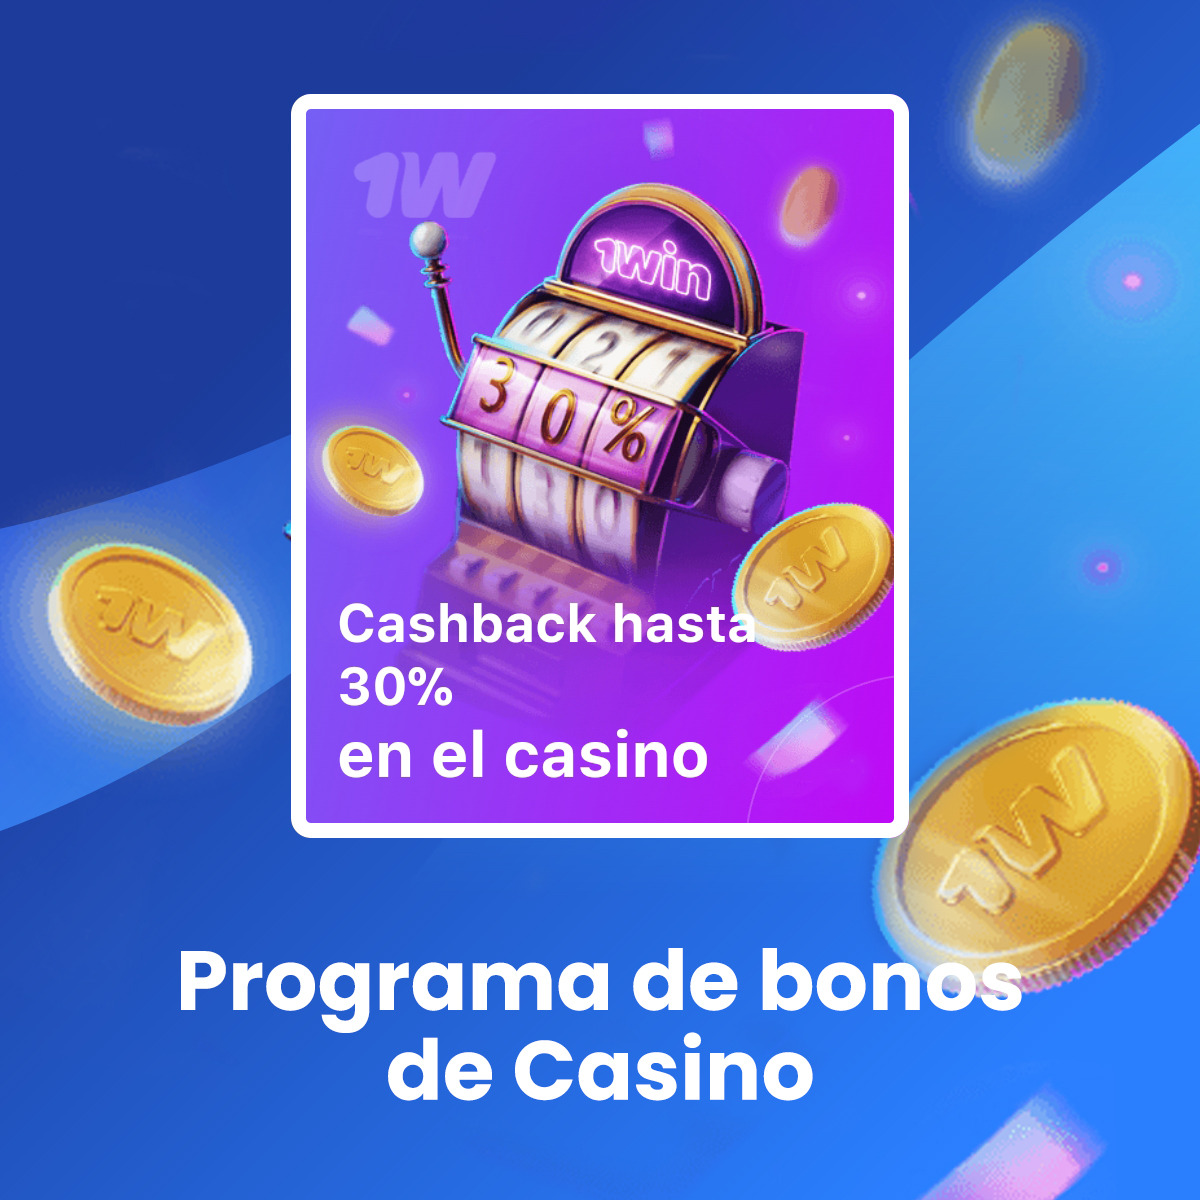 ¿Cómo obtengo un bono de bienvenida de casino en 1win Colombia?